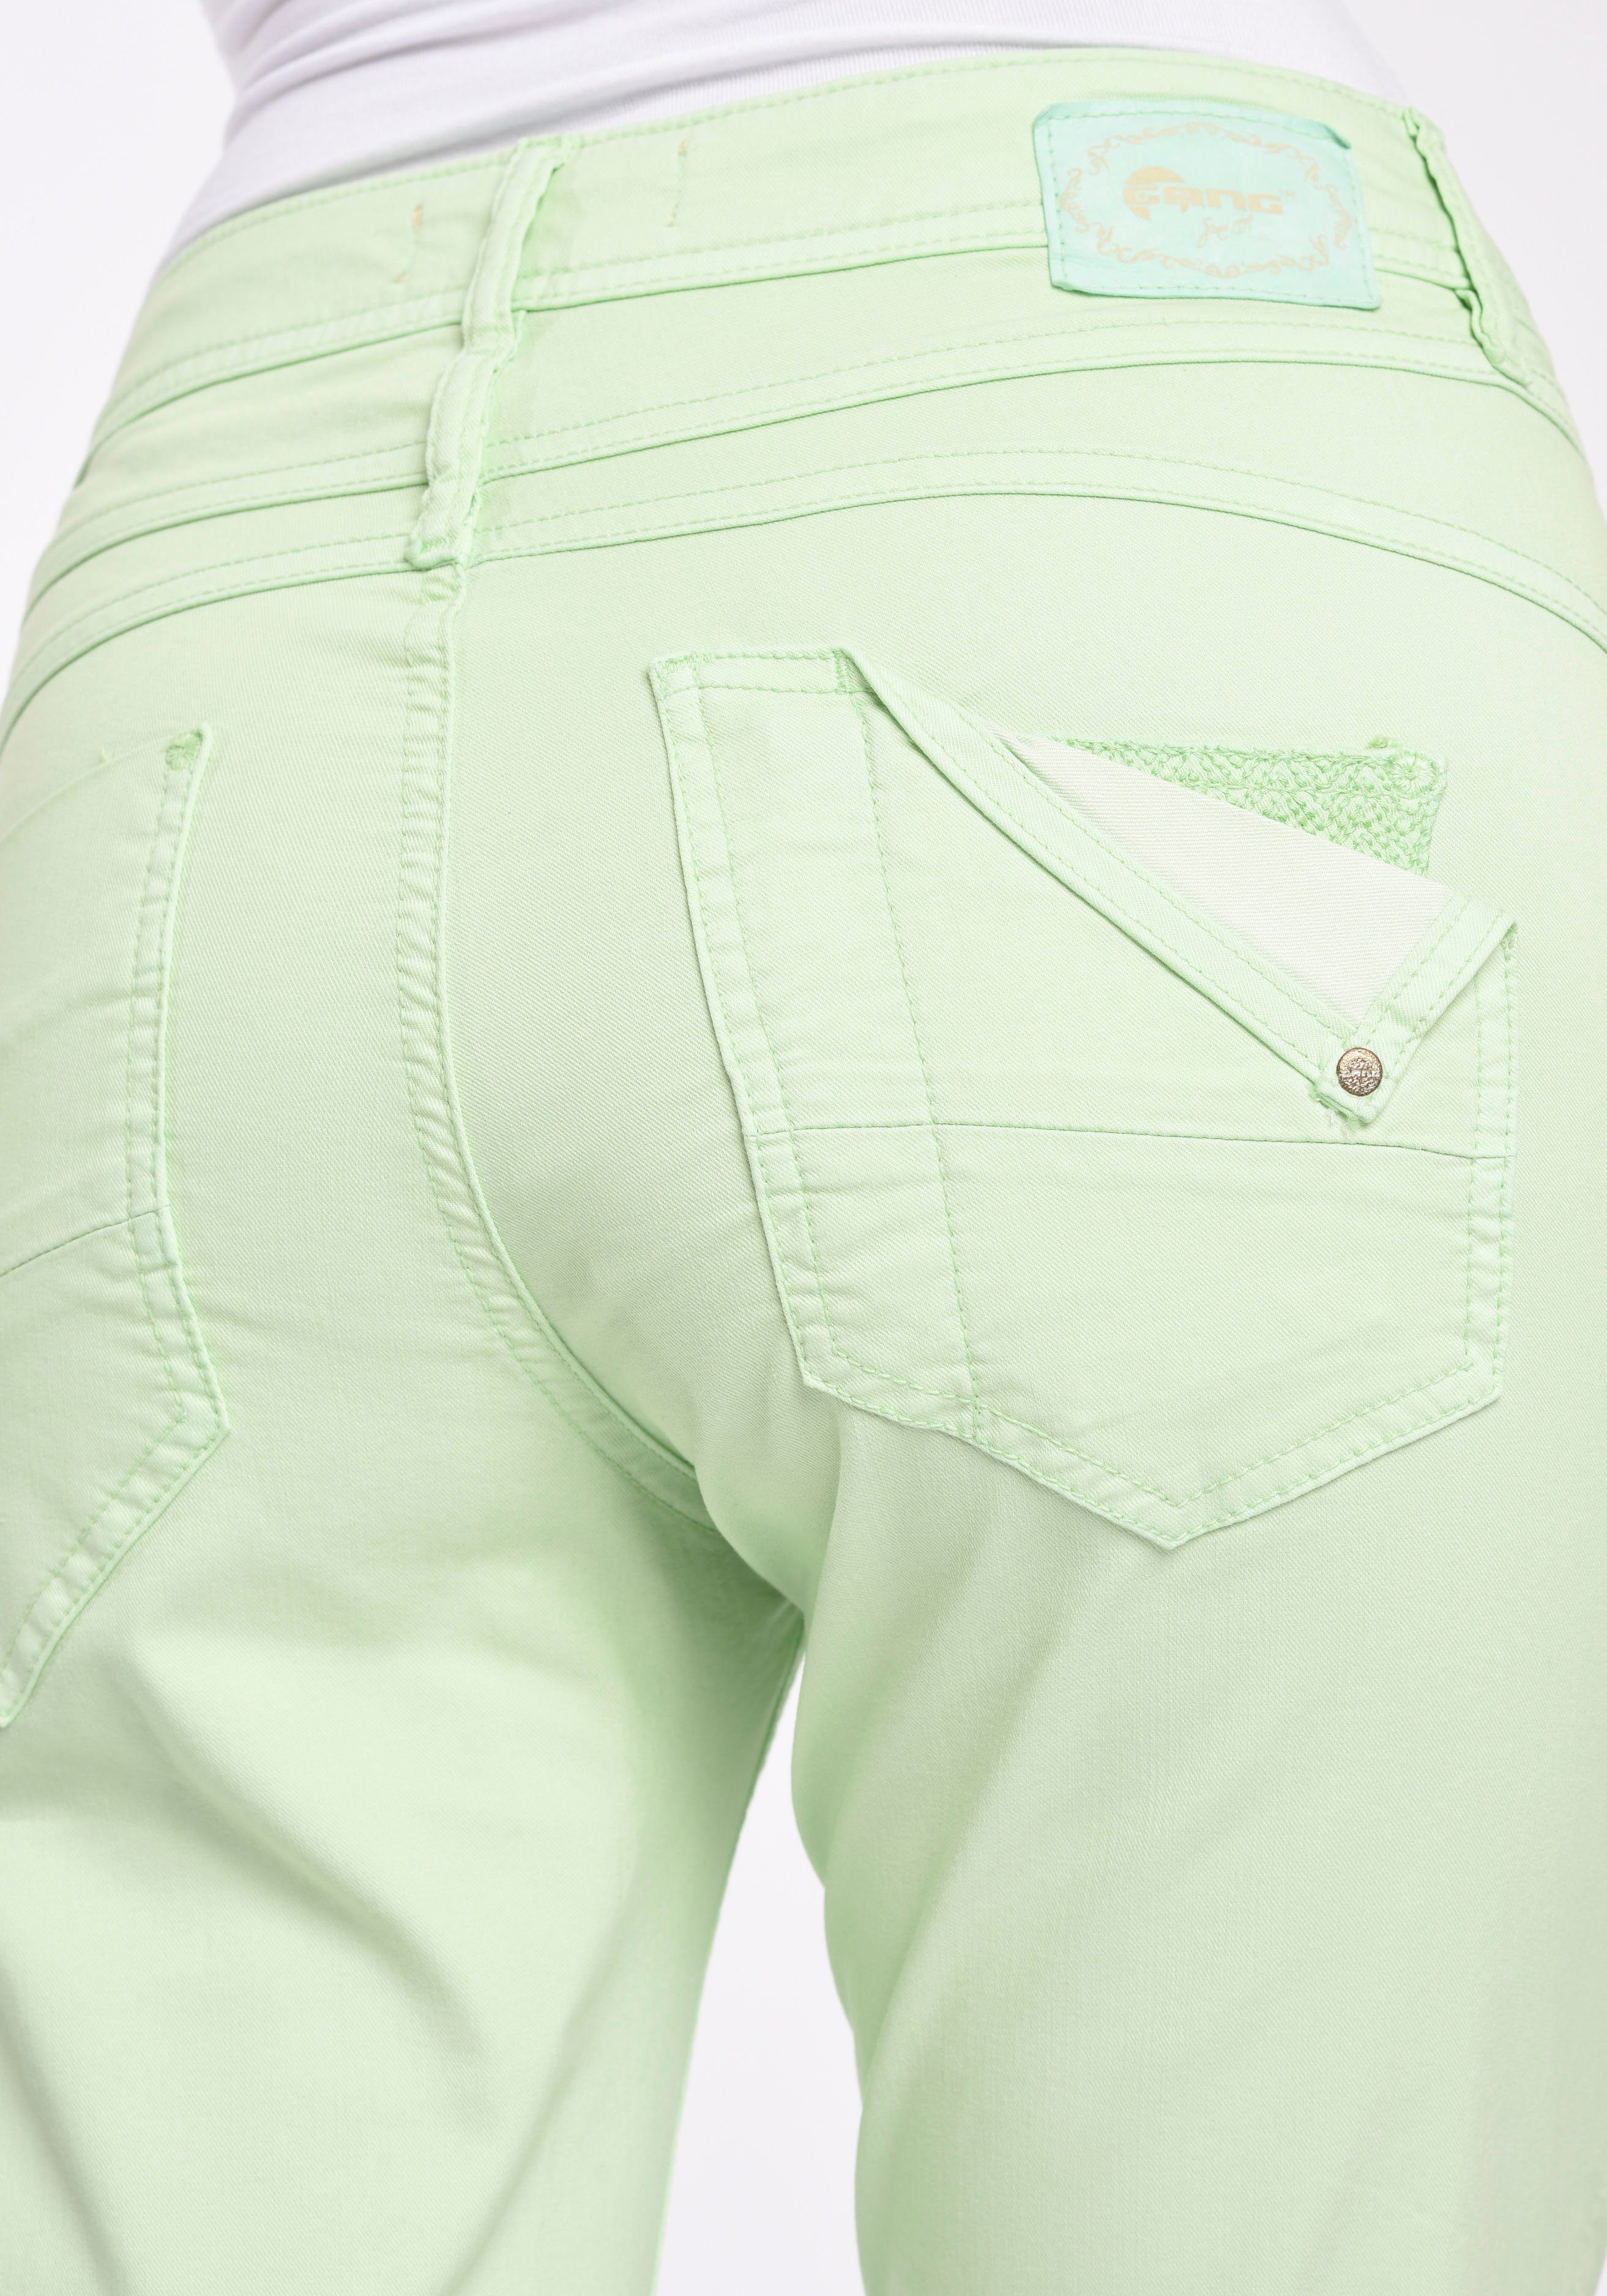 pastel 5-Pocket-Hose modisch CROPPED mit green 5-Pocket bijou verkürzter 94AMELIE Beinlänge GANG Style